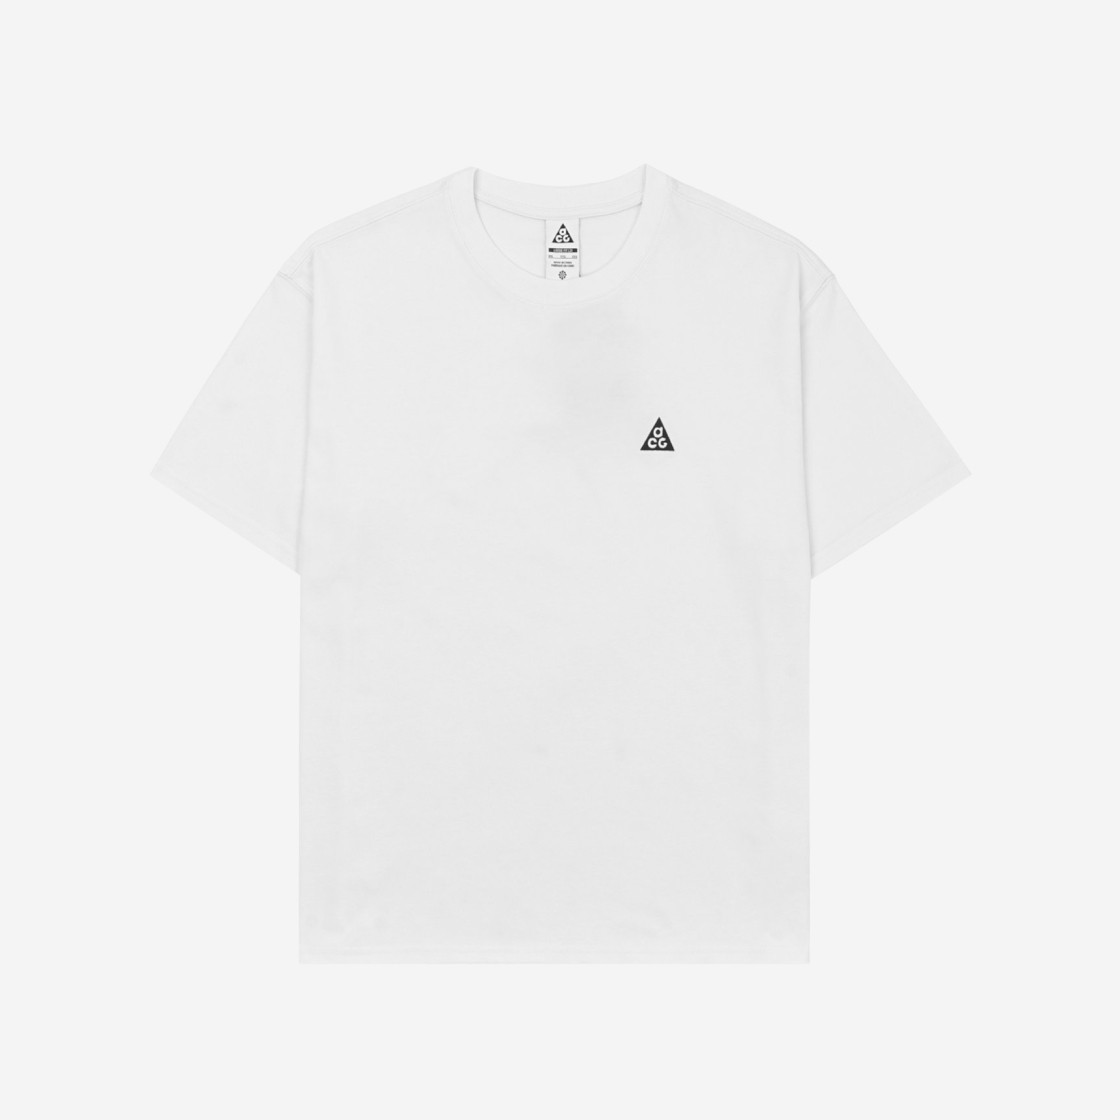 나이키 ACG LBR 티셔츠 서밋 화이트 - 아시아 DJ3643-121